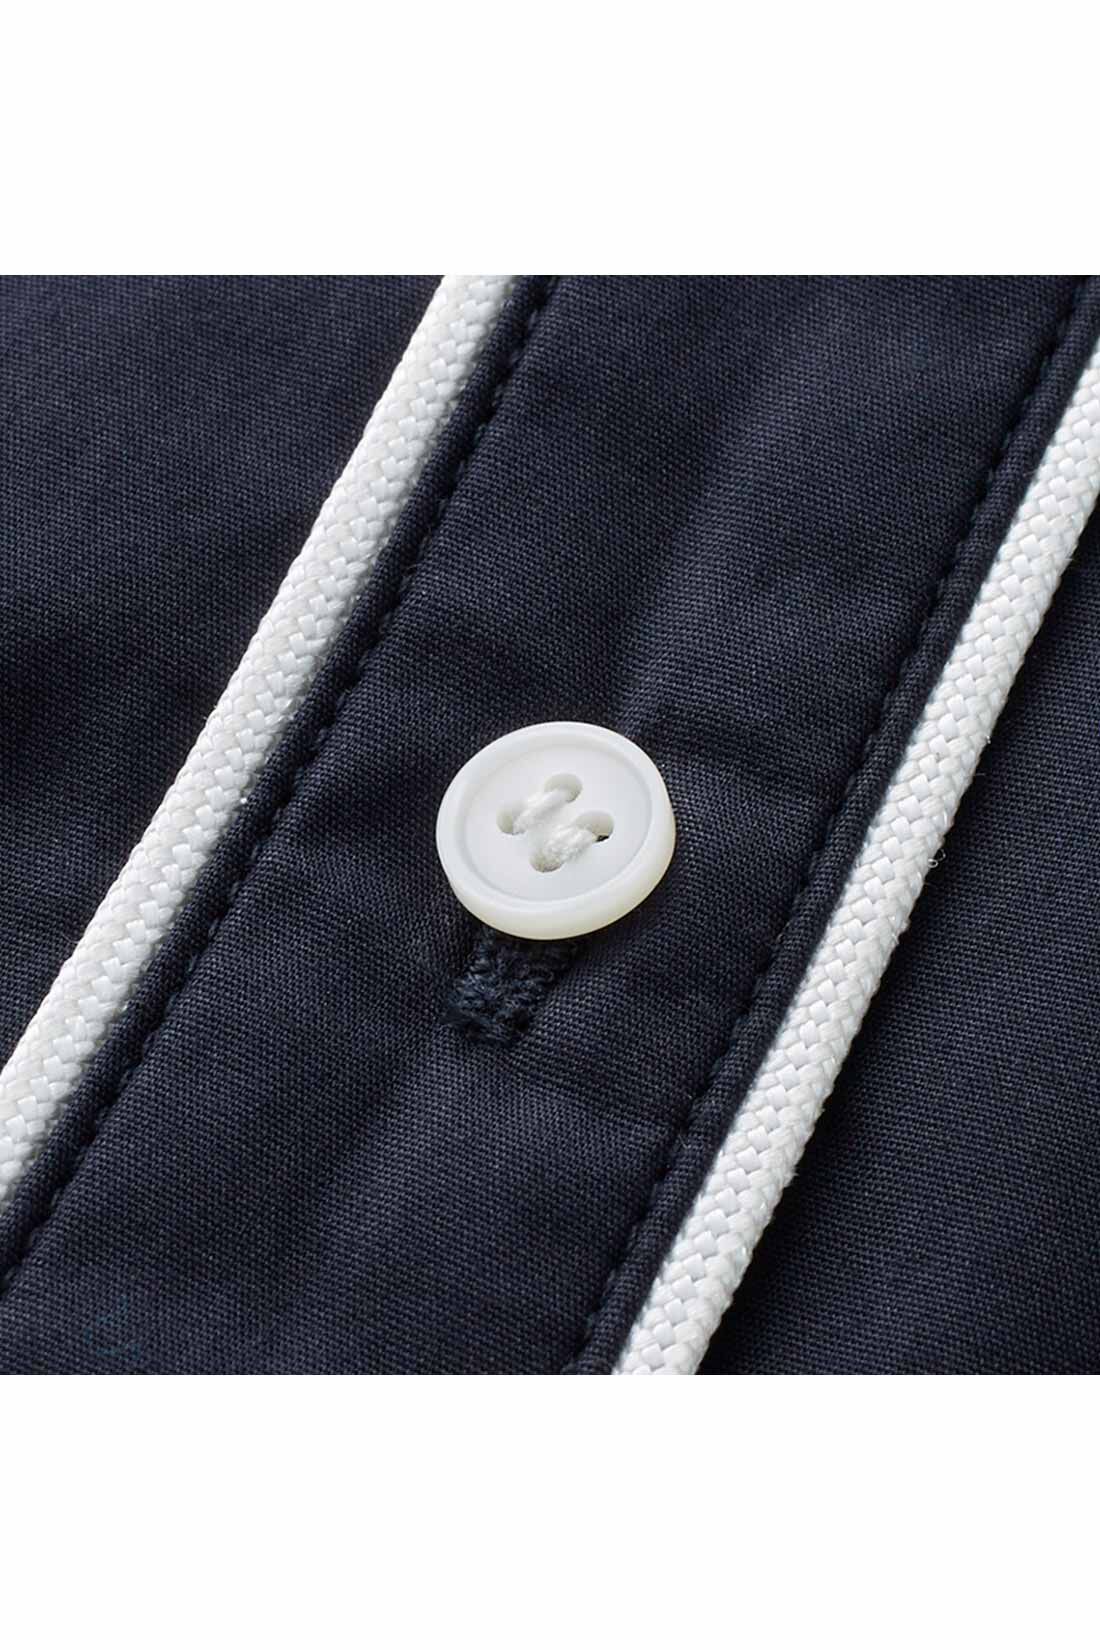 IEDIT[イディット]　コーデのポイントになる きれいめパイピングシャツ〈ベージュ〉|白いパイピングテープとボタンが、清潔感＆華やかなアクセントに。